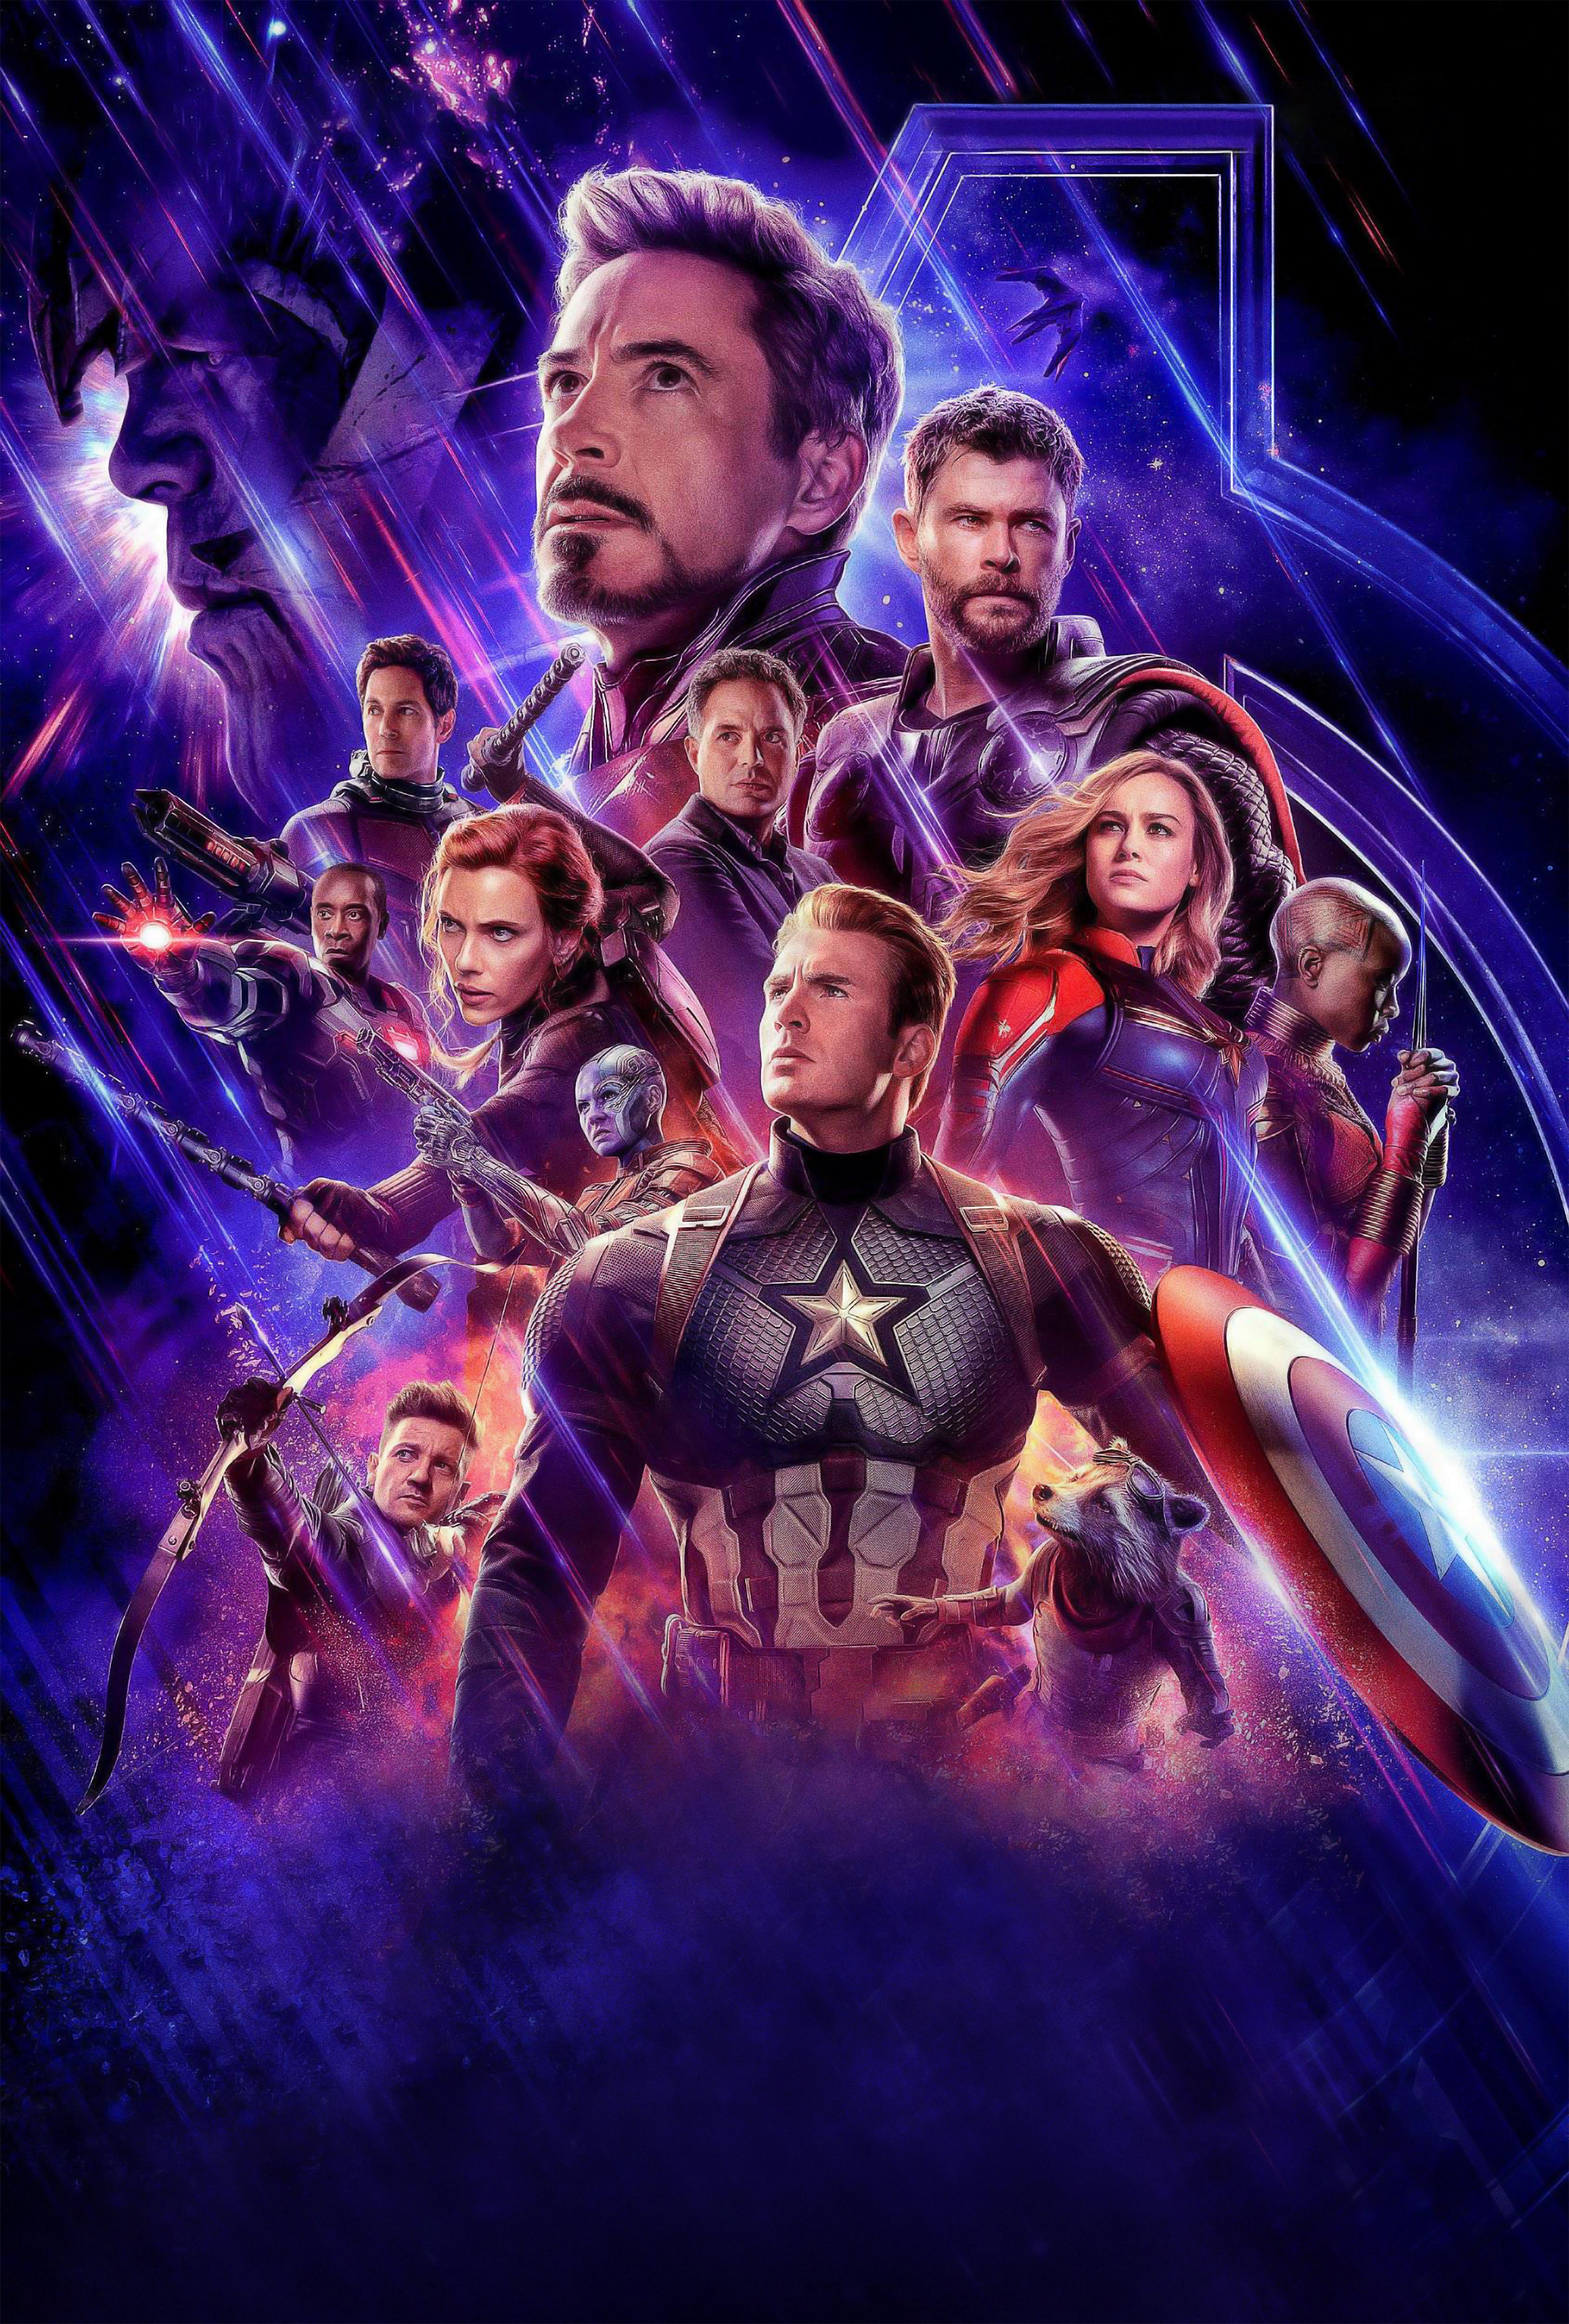 Avengers Endgame Captain Marvel Artwork 2018 Wallpapers